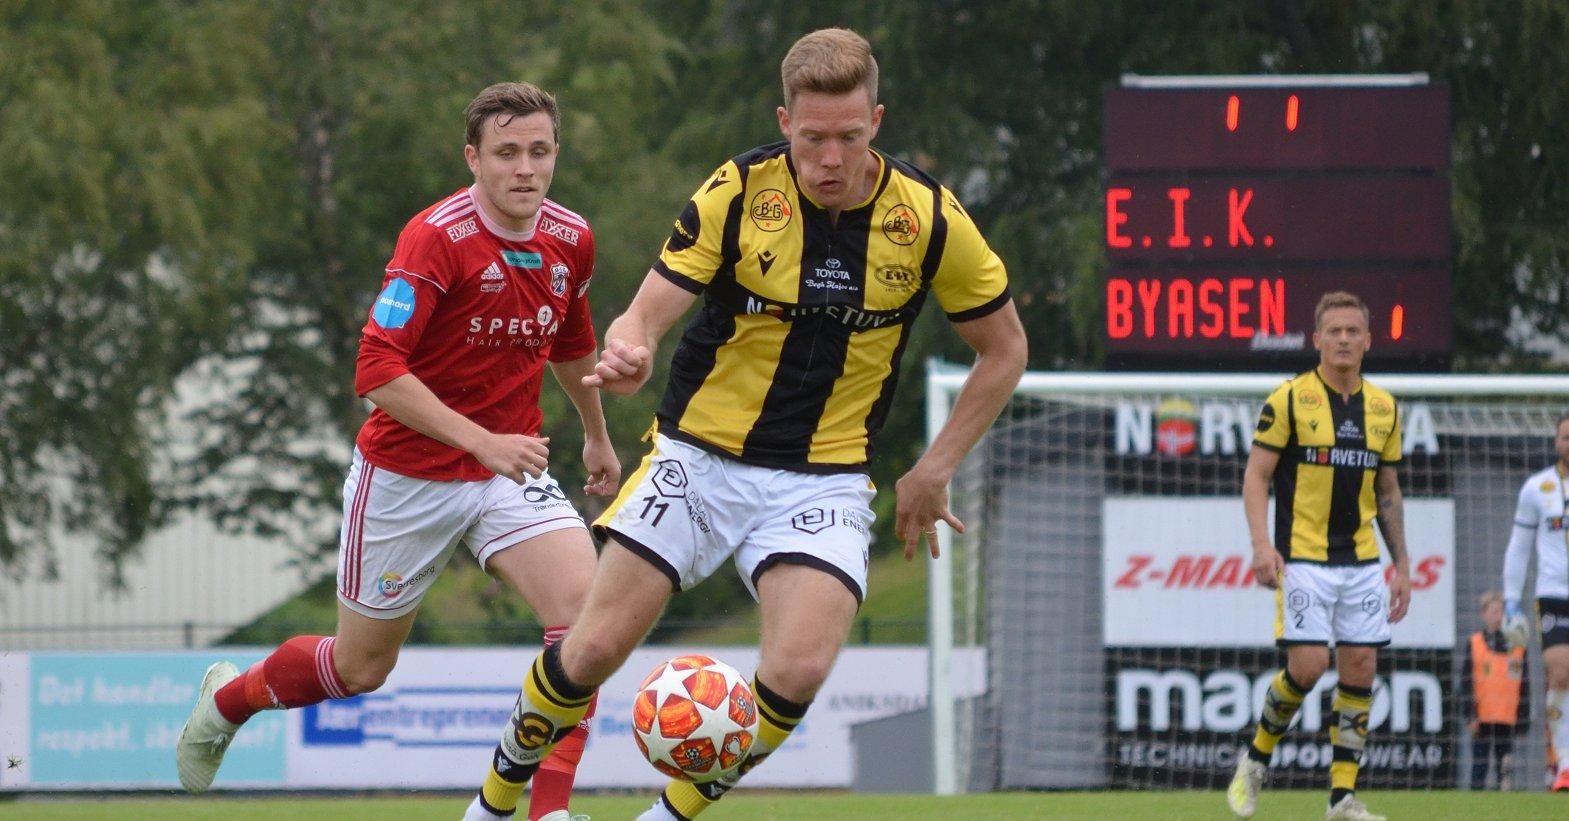 Markus Naglestad scoret begge målene på Høddvoll, og er oppe i imponerende 25 scoringer i årets serie. Her fra hjemmekampen mot Byåsen tidligere i år. 